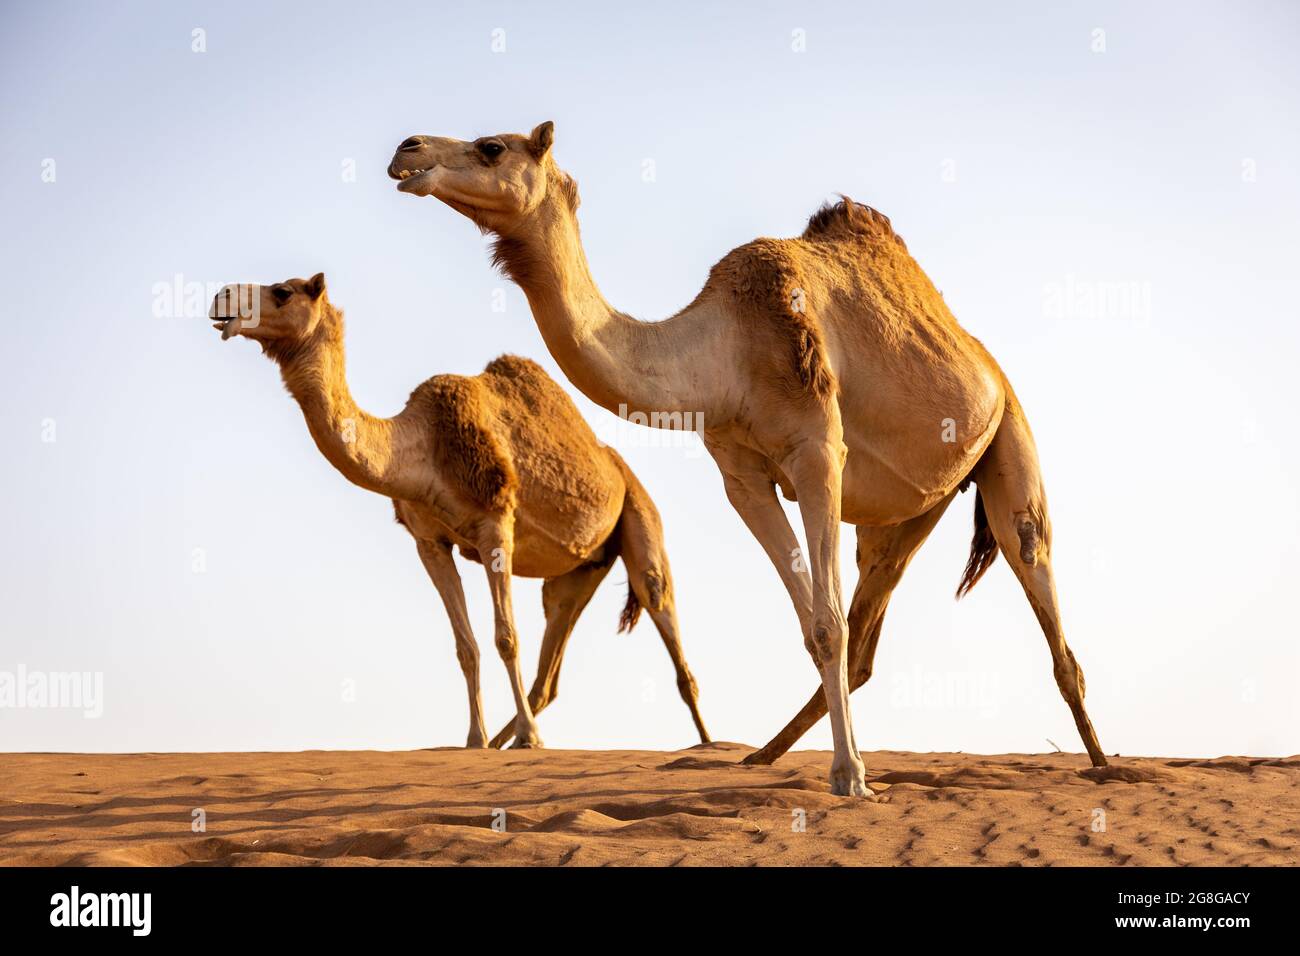 Zwei Dromedarkamele (Camelus dromedarius) stehen auf die gleiche Weise auf der Spitze der Sanddüne in der Wüste, mit Himmel im Hintergrund. Stockfoto